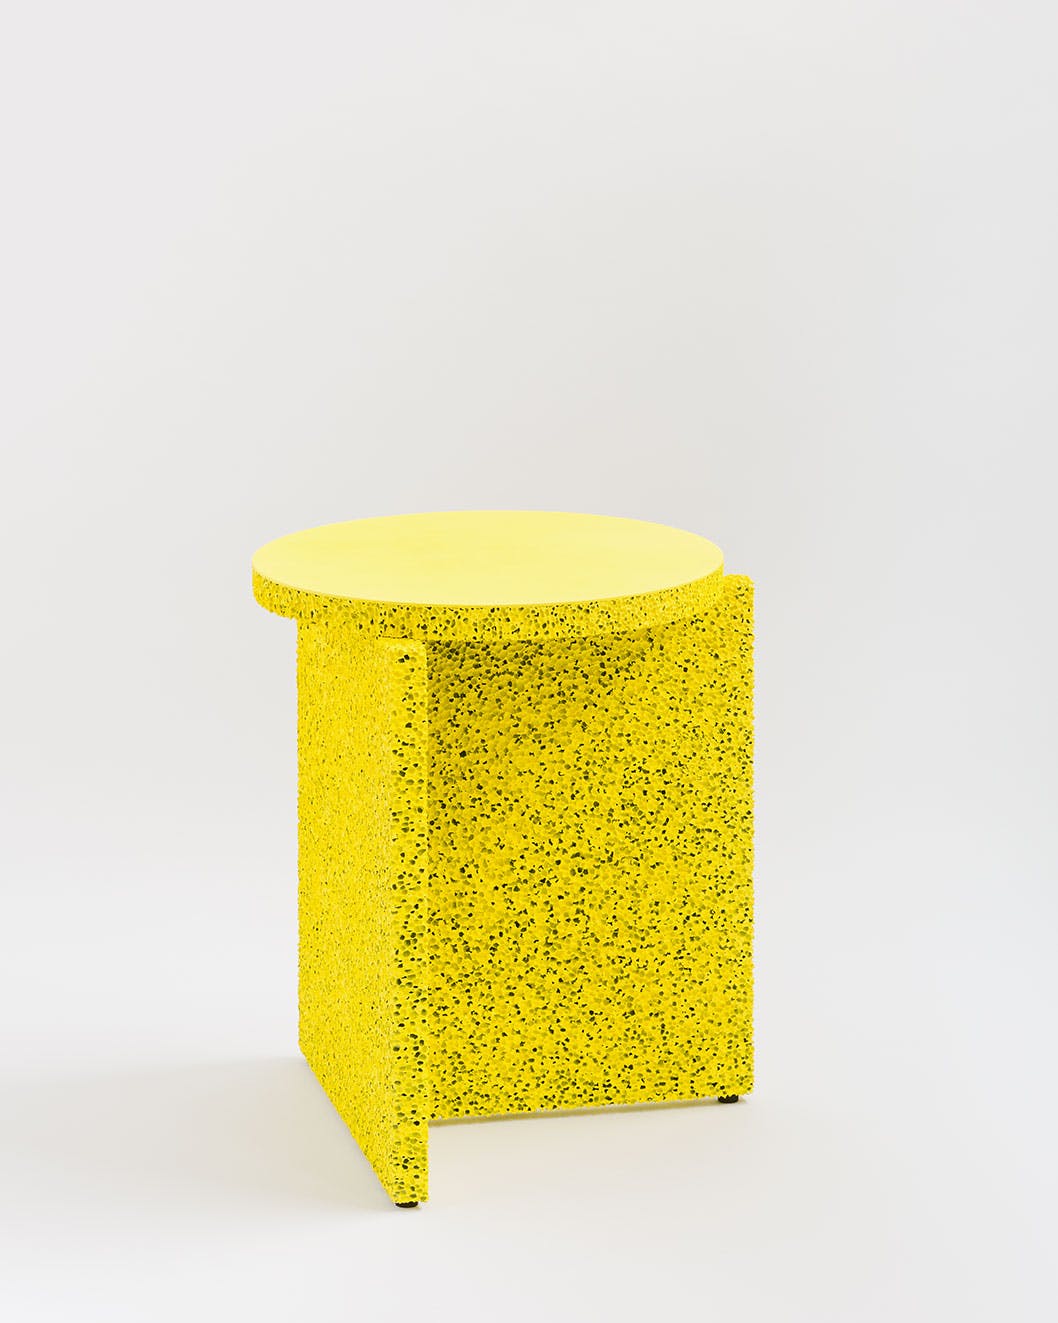 Sponge Table by Calen Knauf